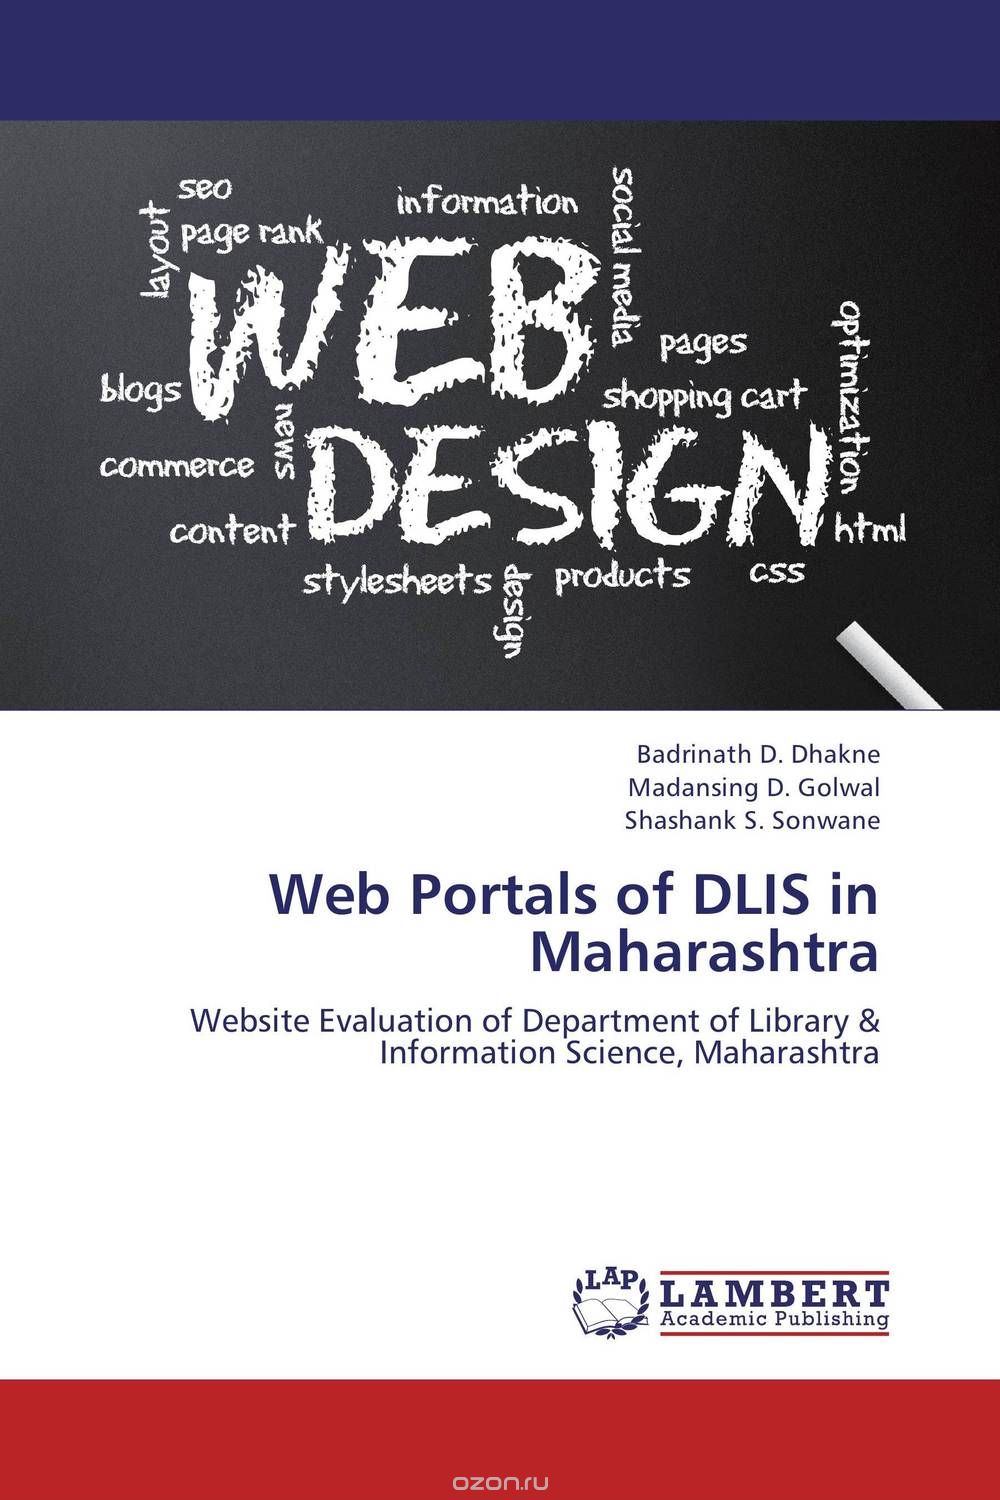 Web Portals of DLIS in Maharashtra